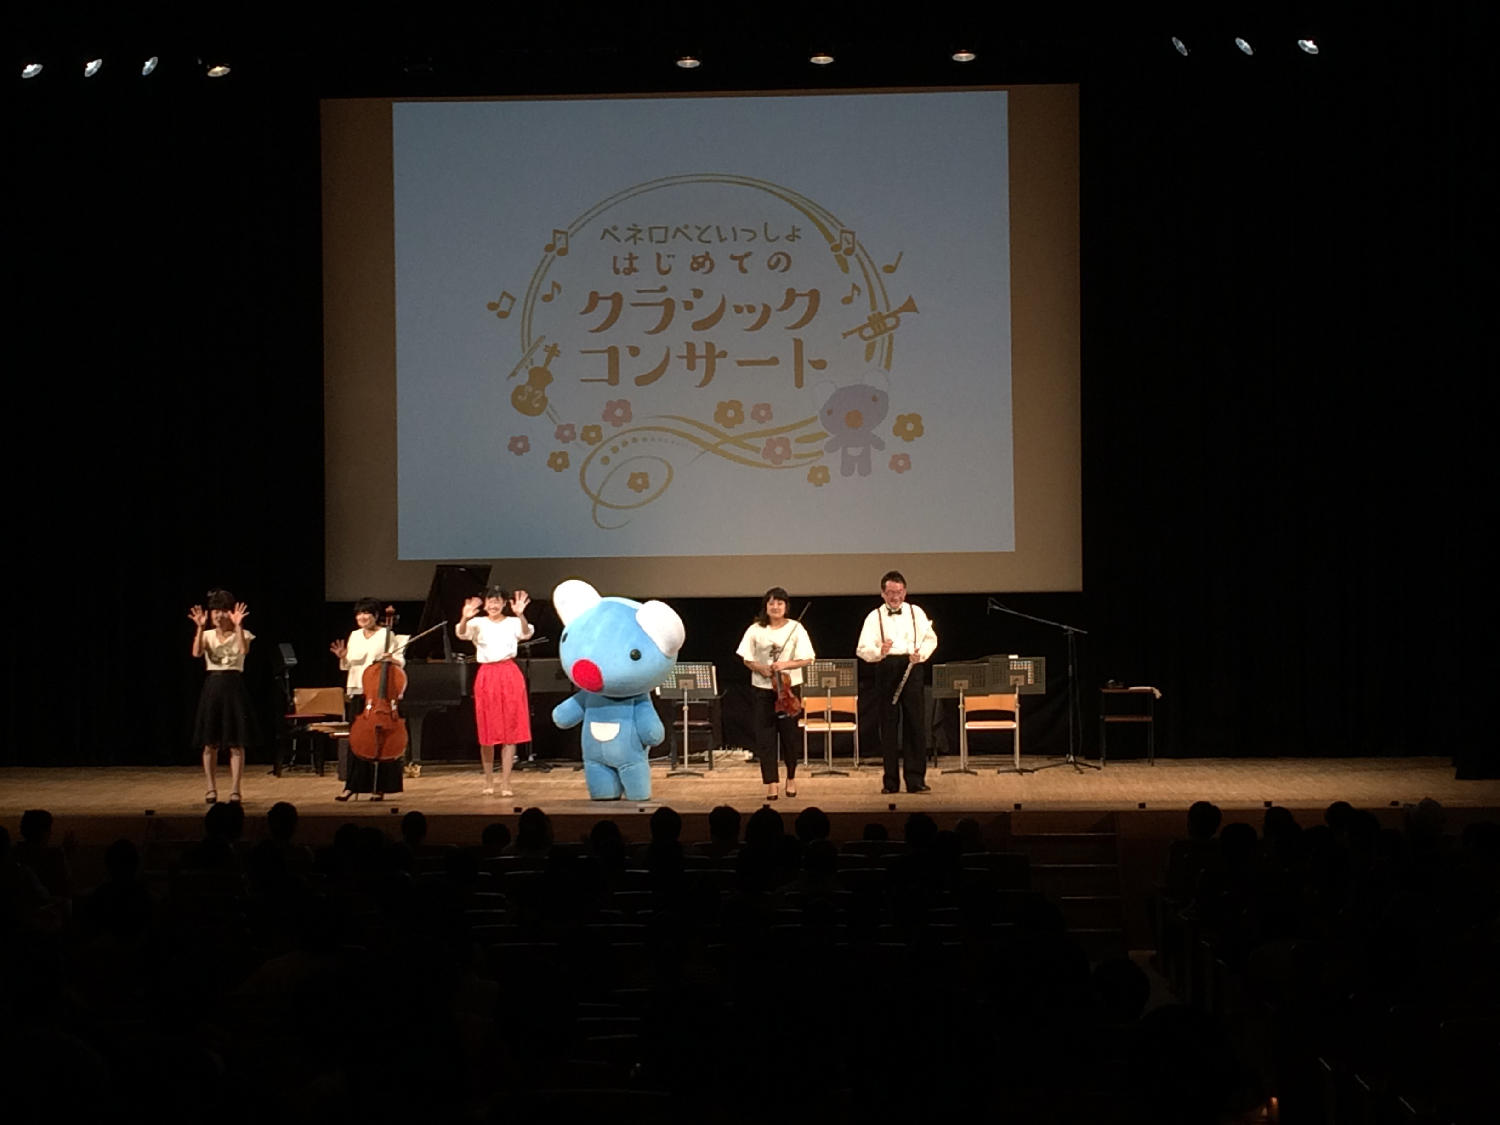 【千葉】船橋市民文化ホール 公演レポート画像 サムネイル